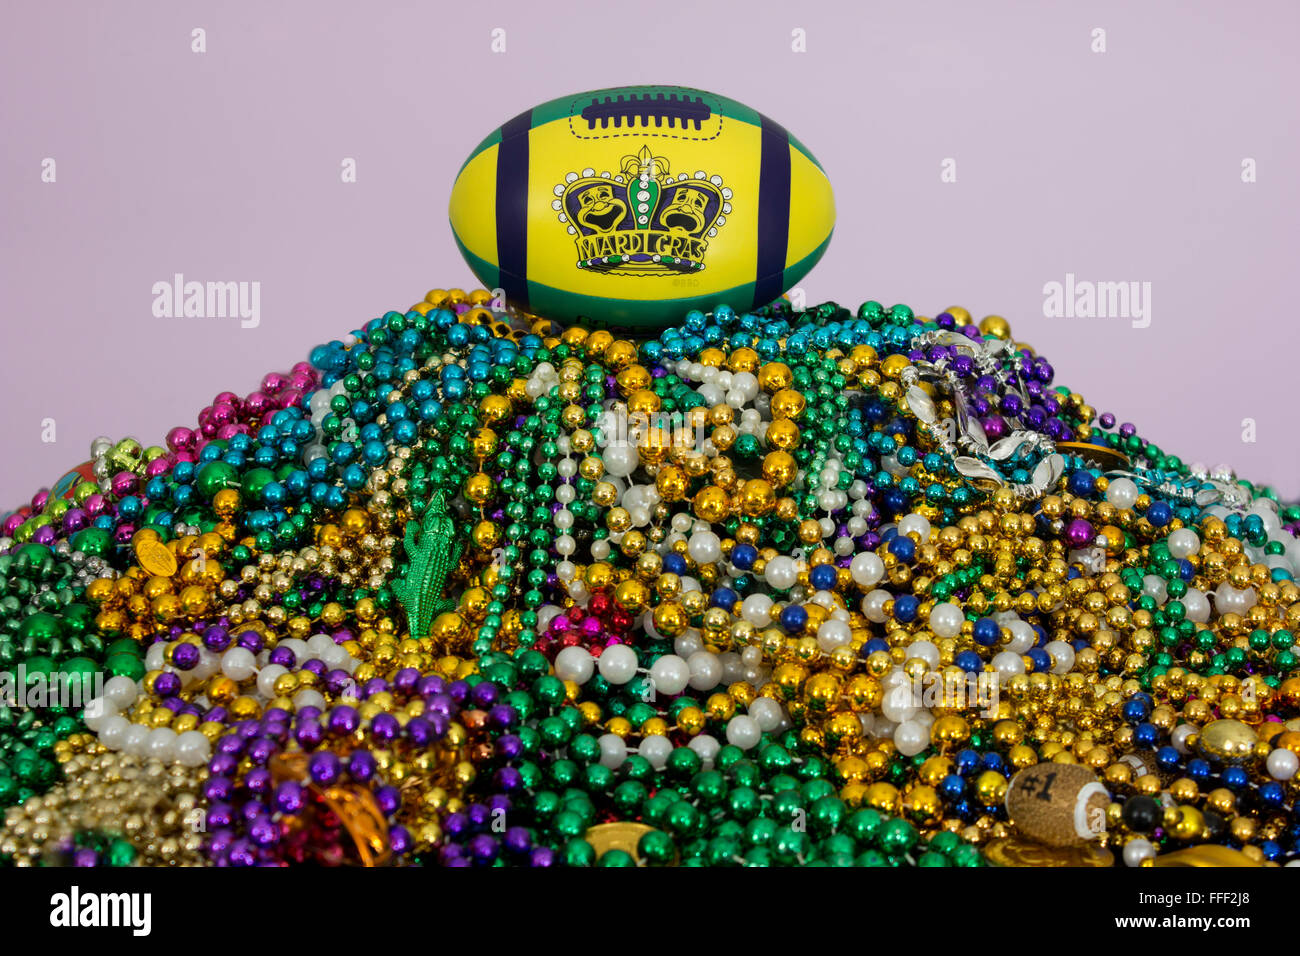 Mardi Gras maschere e re la corona stampato su un football americano, arroccato sulla cima di un enorme pila di Mardi Gras perline. Foto Stock